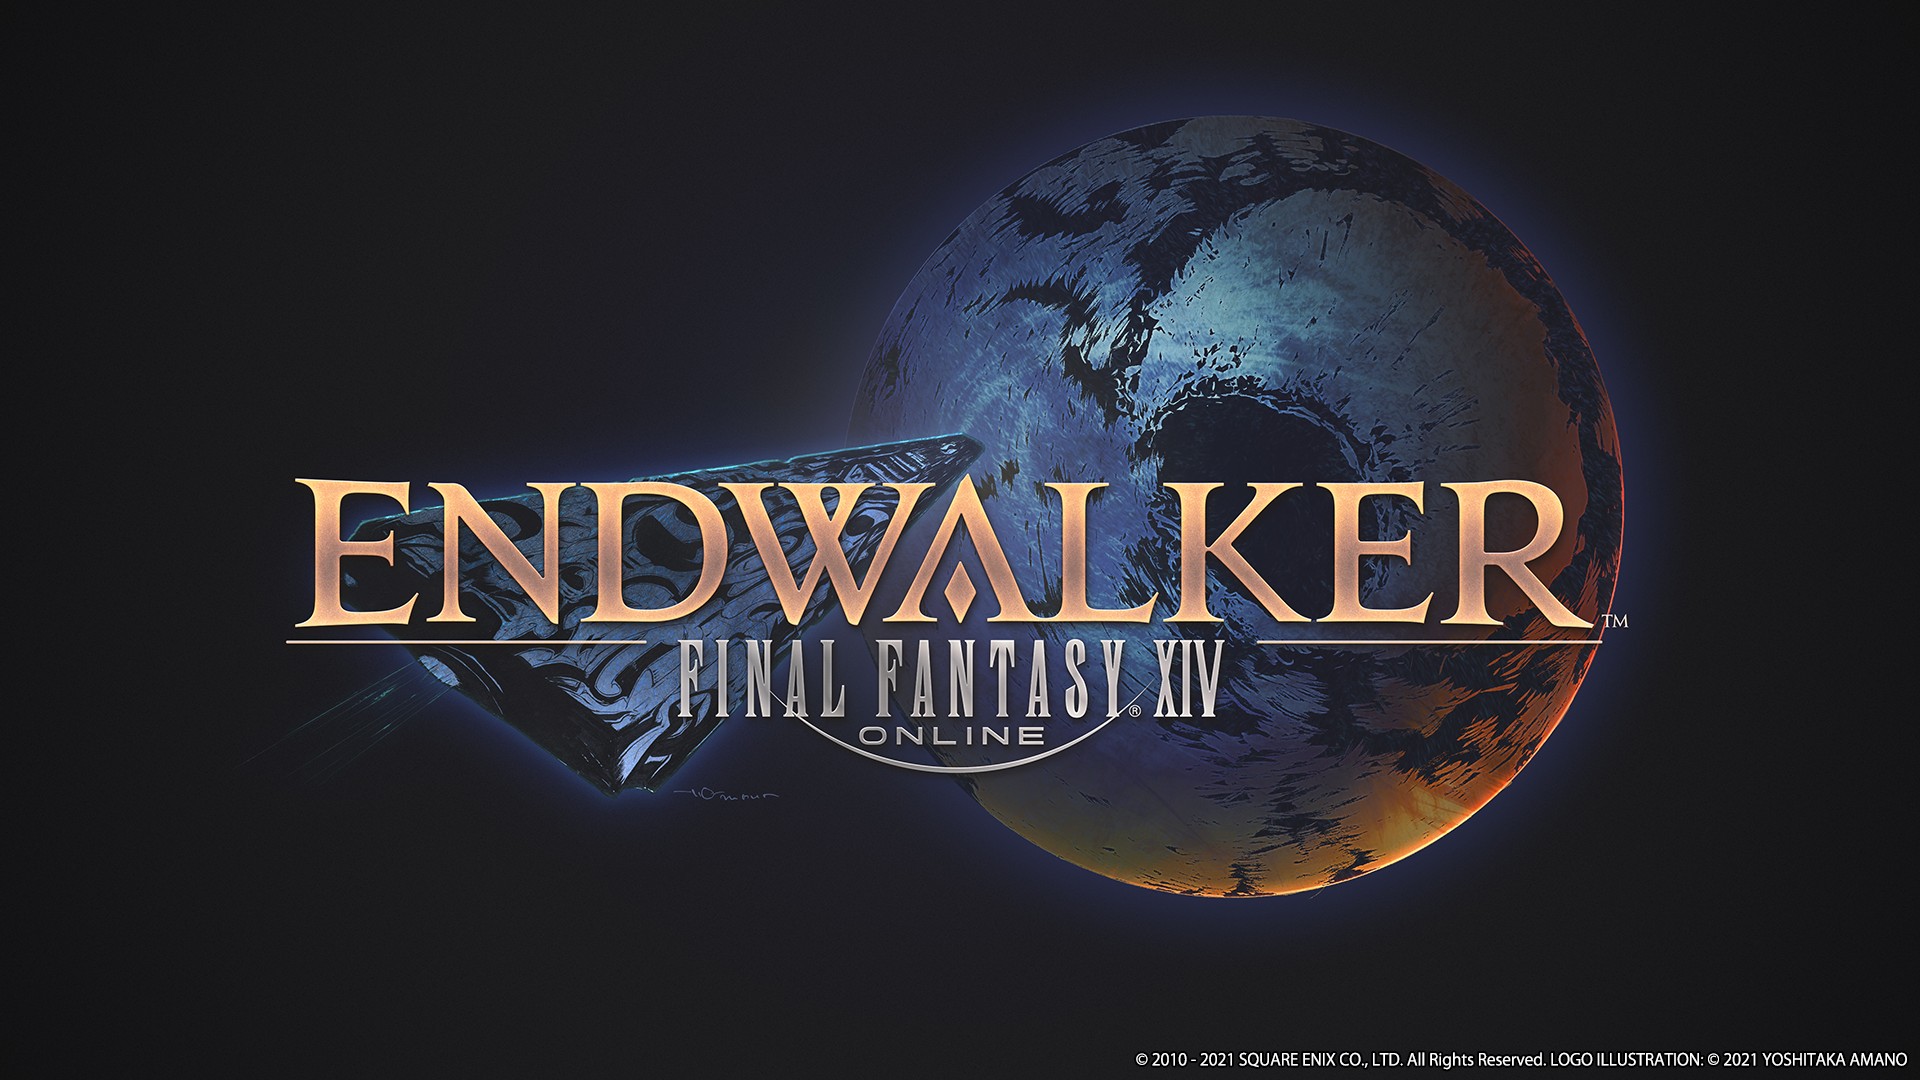 Final Fantasy XIV: Endwalker Announces New Release Date Alongside Launch Trailer Debut